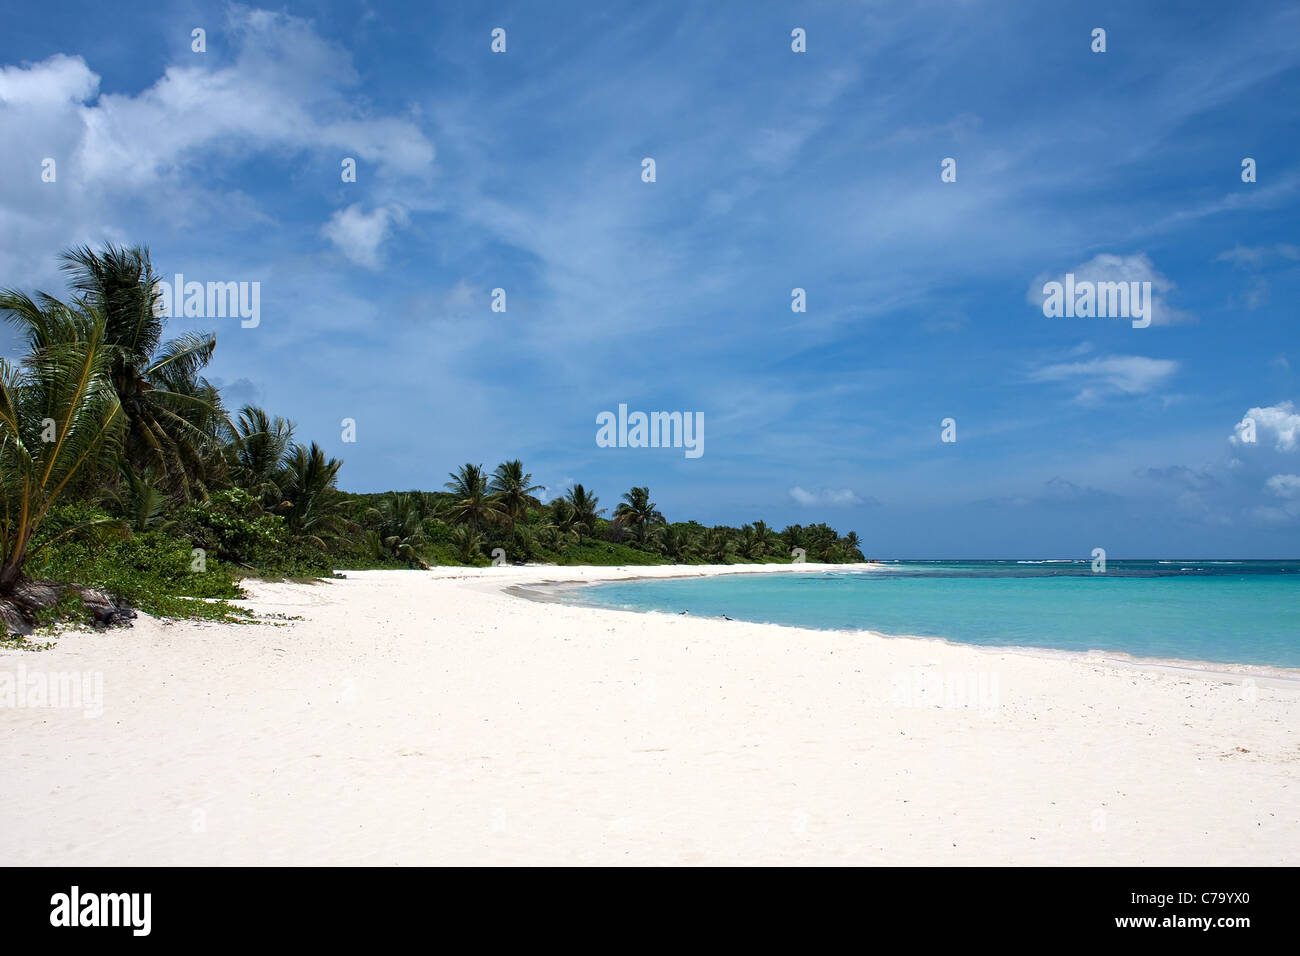 La preciosa playa de arena blanca llena de flamenco en la isla puertorriqueña de Culebra. Foto de stock